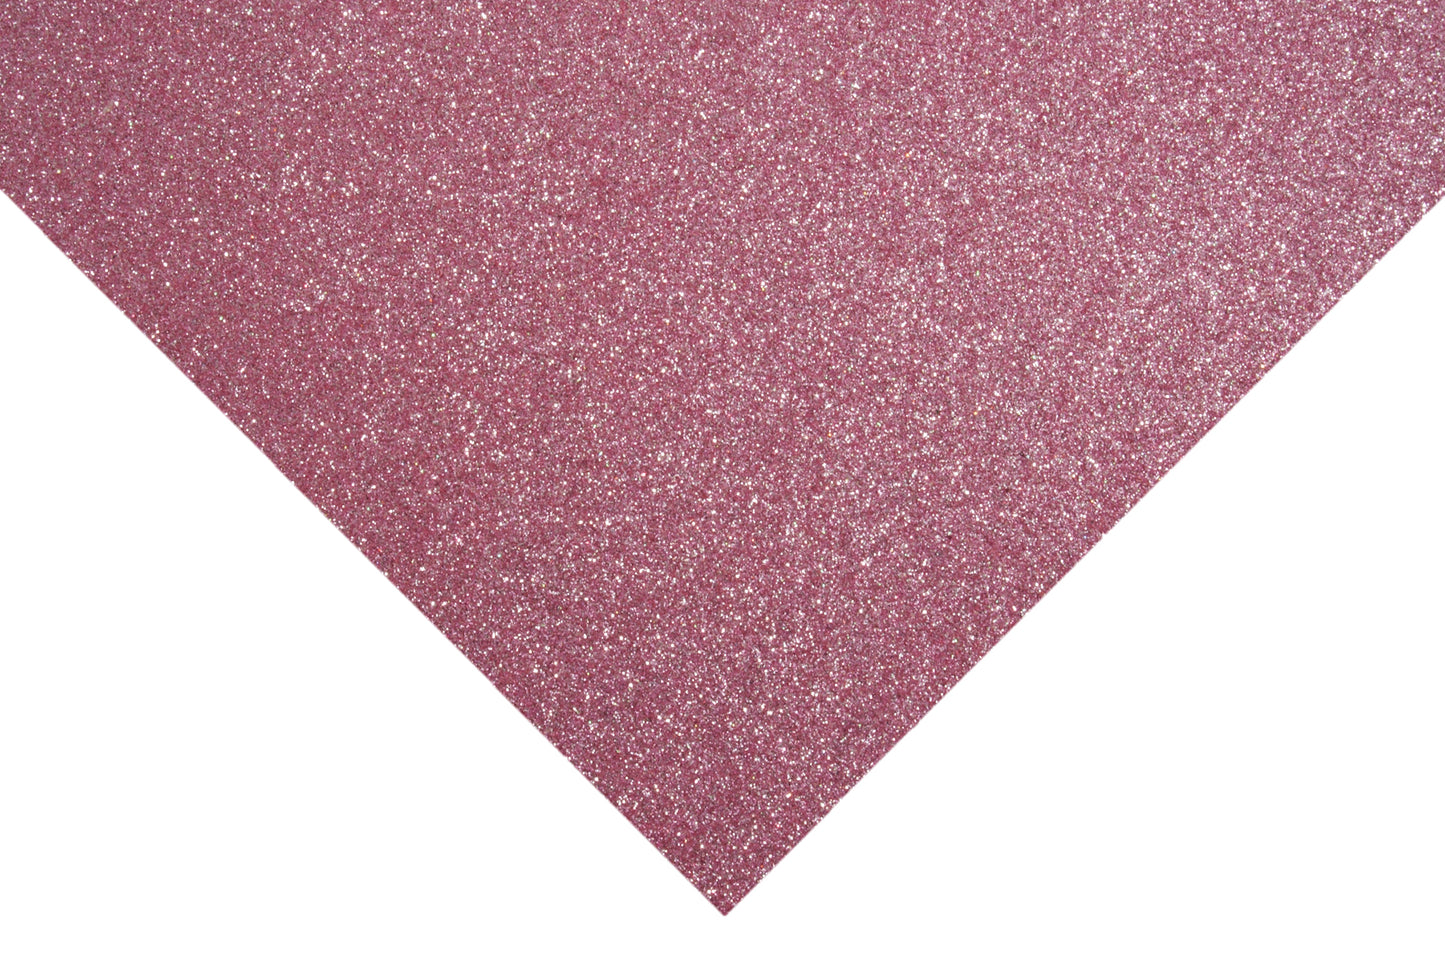 Glitter Felt Sheets: 30 x 23cm: Light pink